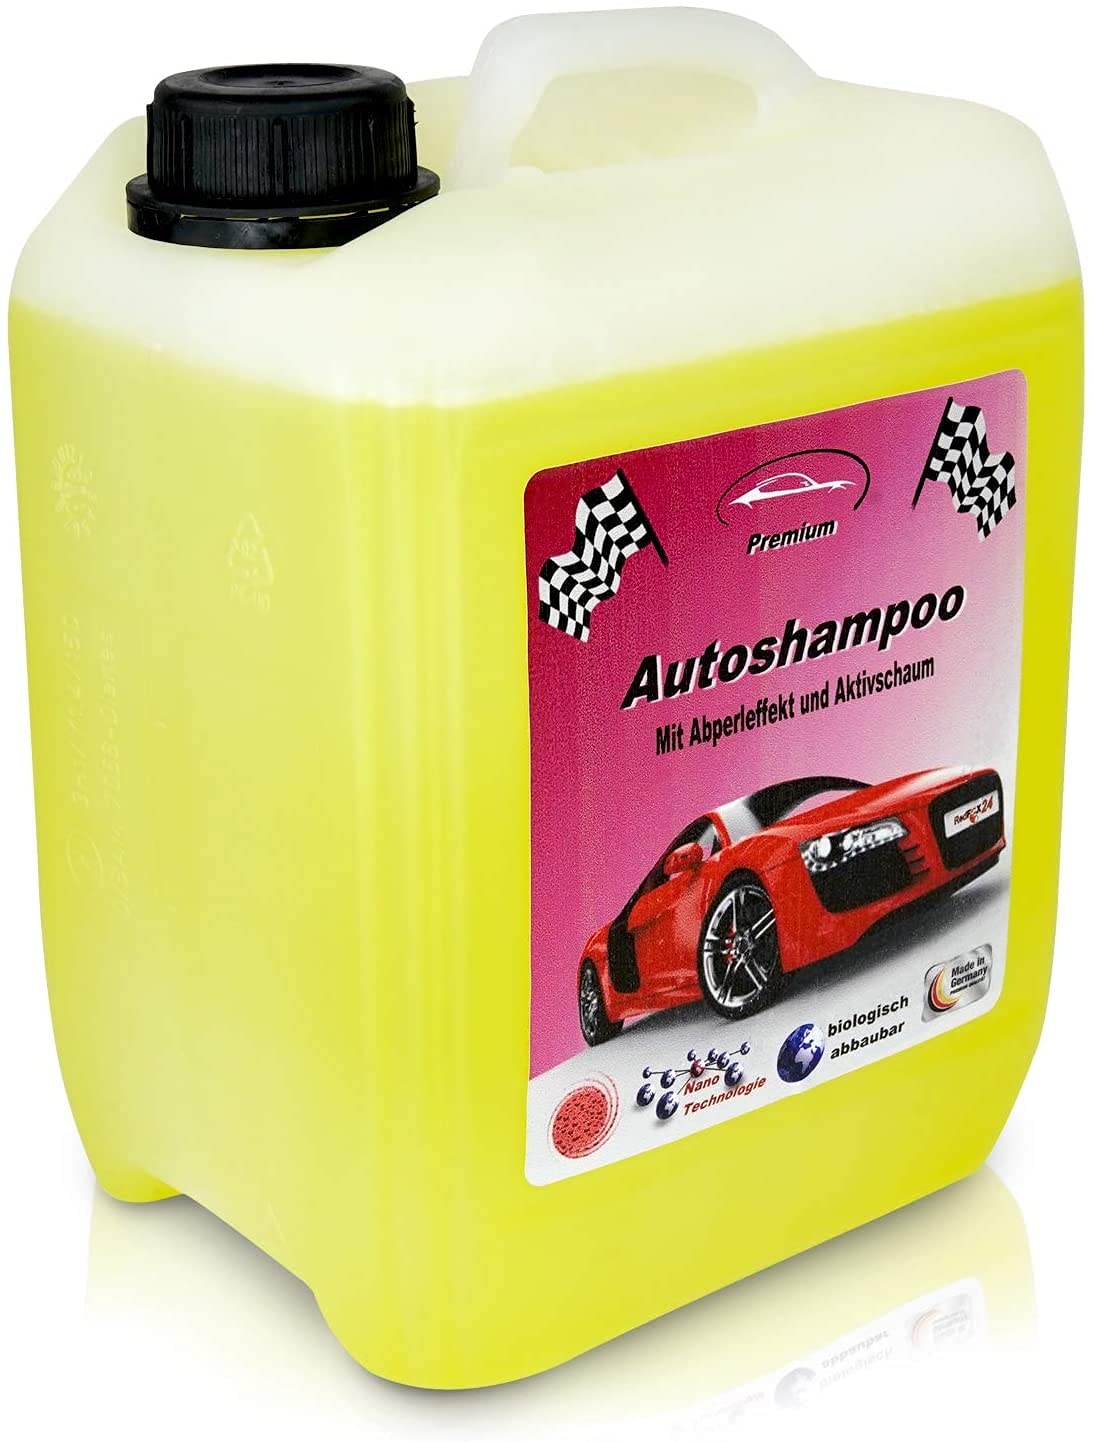 RedFOX24 Premium Autoshampoo Konzentrat - Schaumreiniger - Verdeck Reiniger - car Shampoo - in einem 5 Liter Kanister mit Abfüllhahn erhältlich - Made in Germany von RedFOX24 Premium